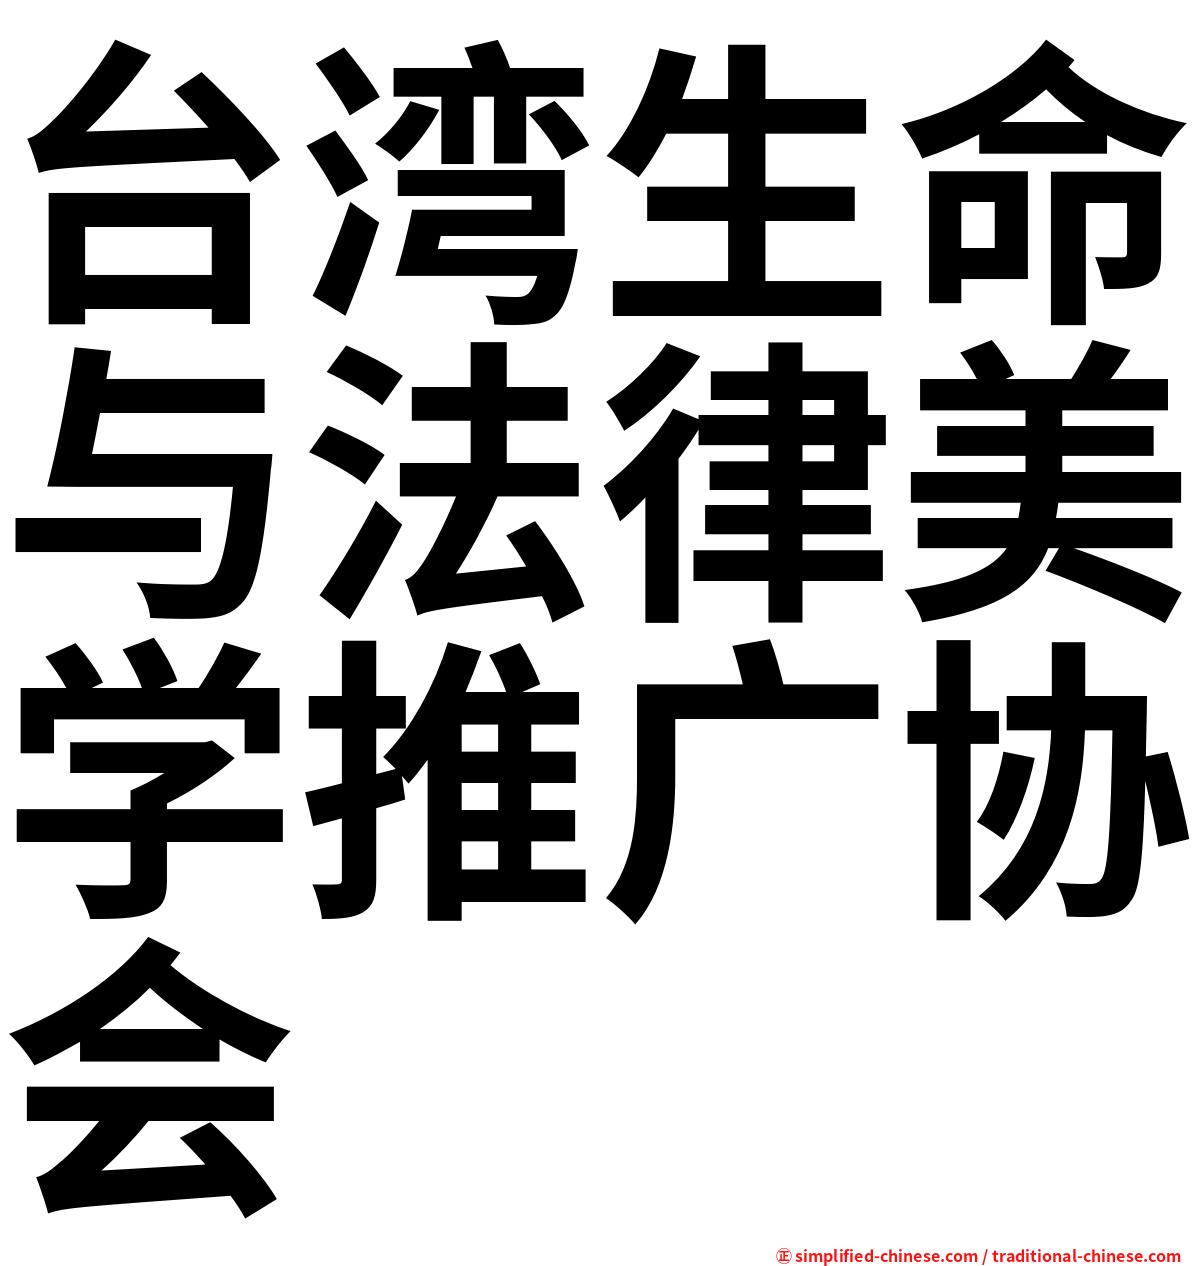 台湾生命与法律美学推广协会